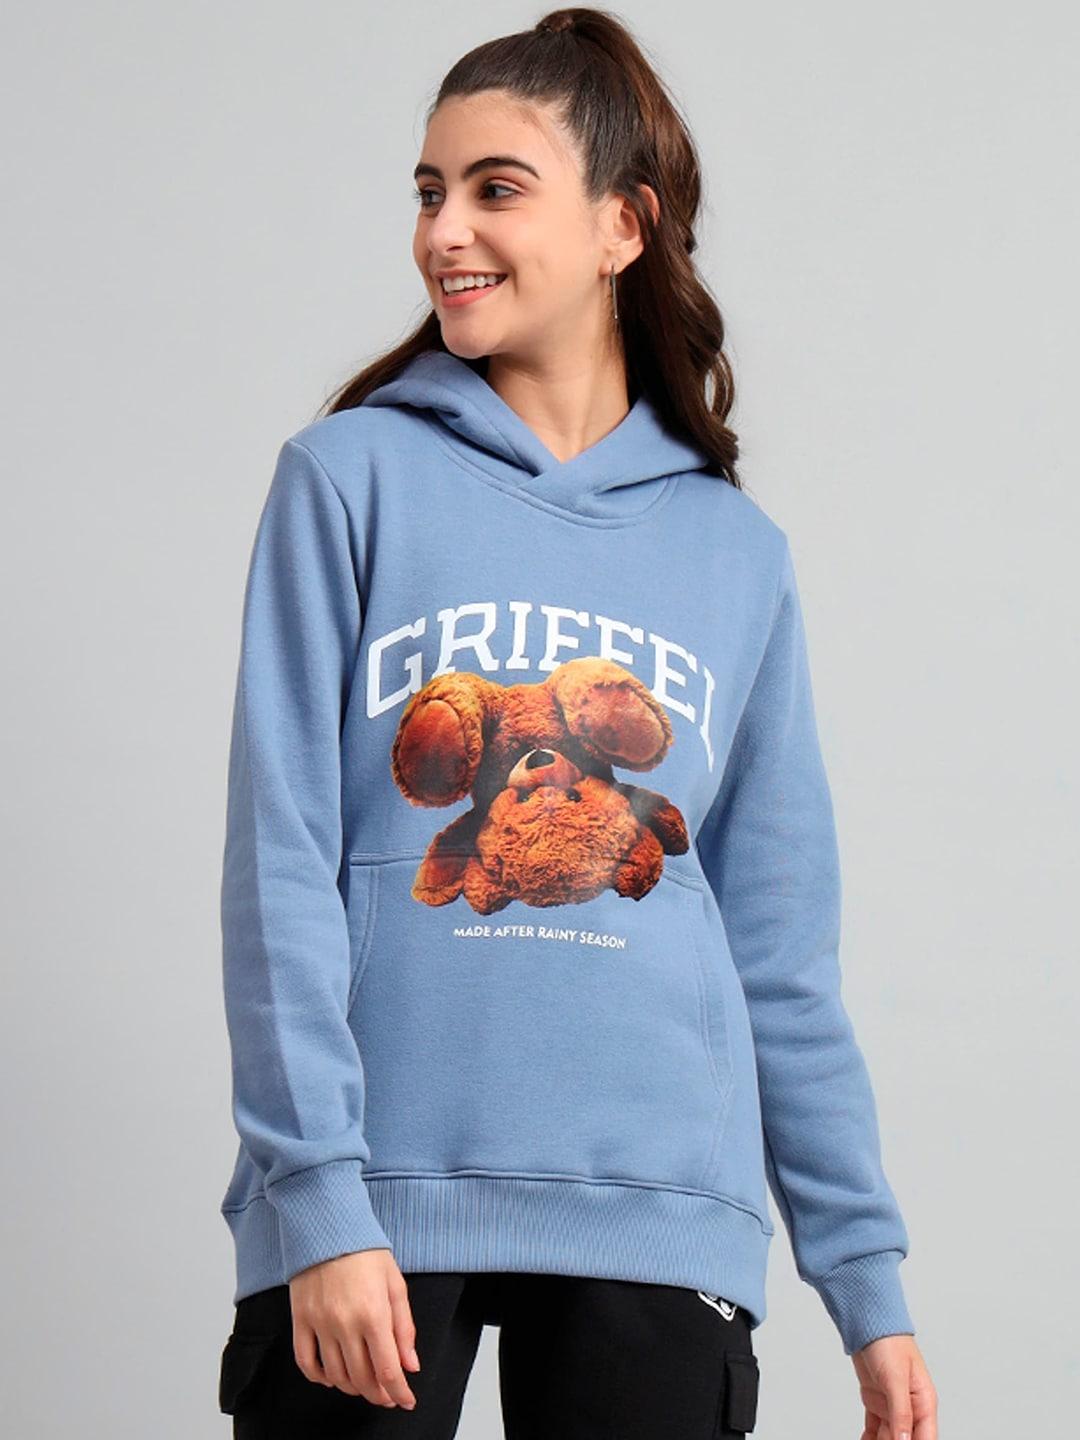 griffel-graphic-printed-hooded-fleece-sweatshirt